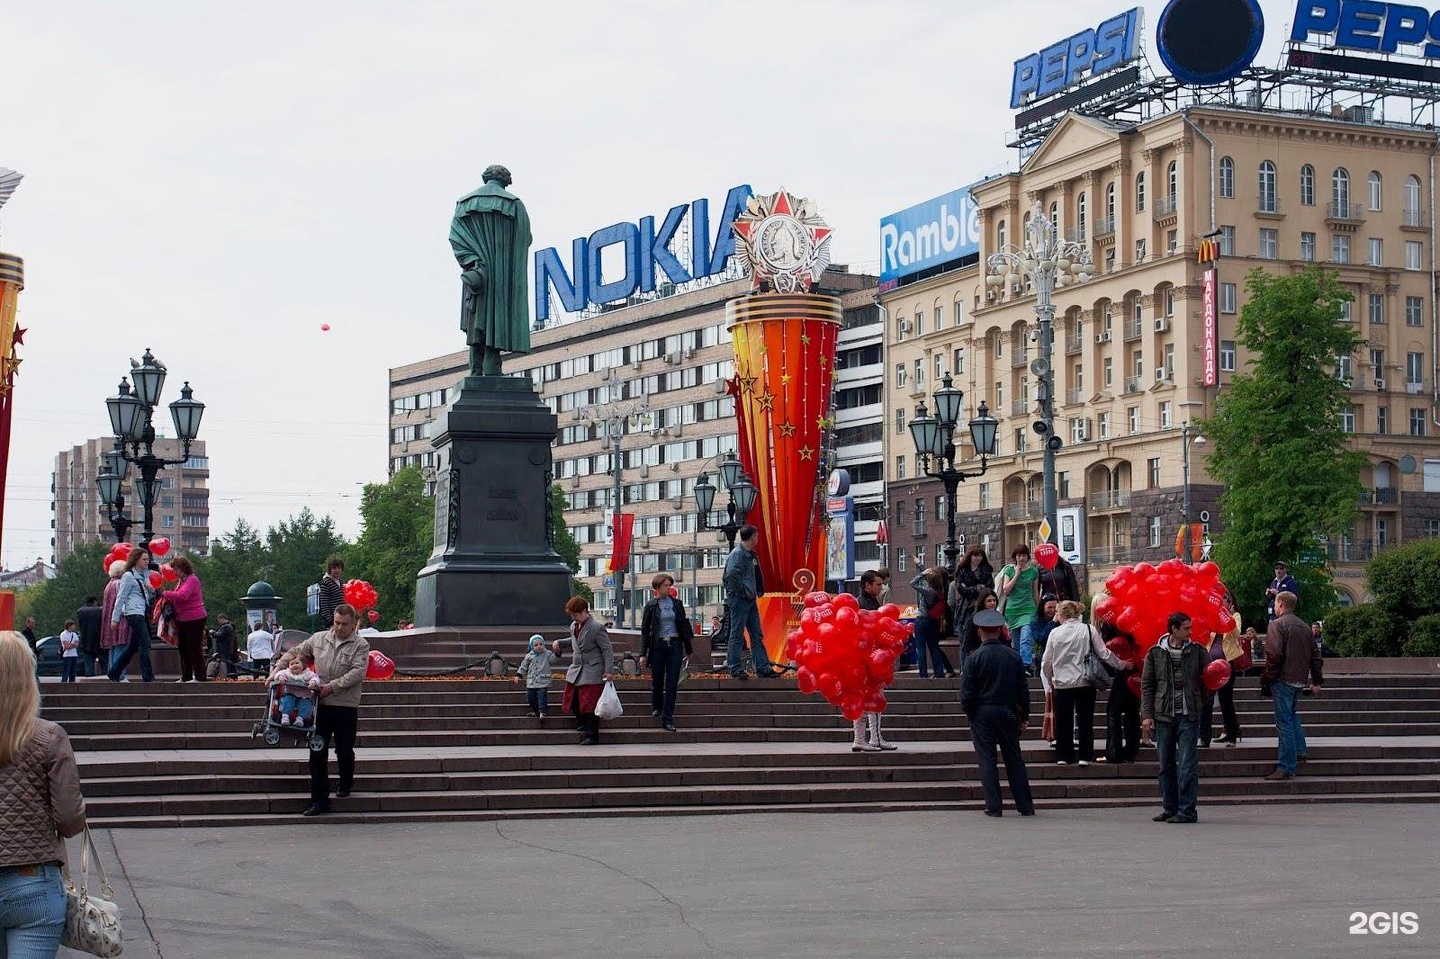 Пушкинская площадь в москве